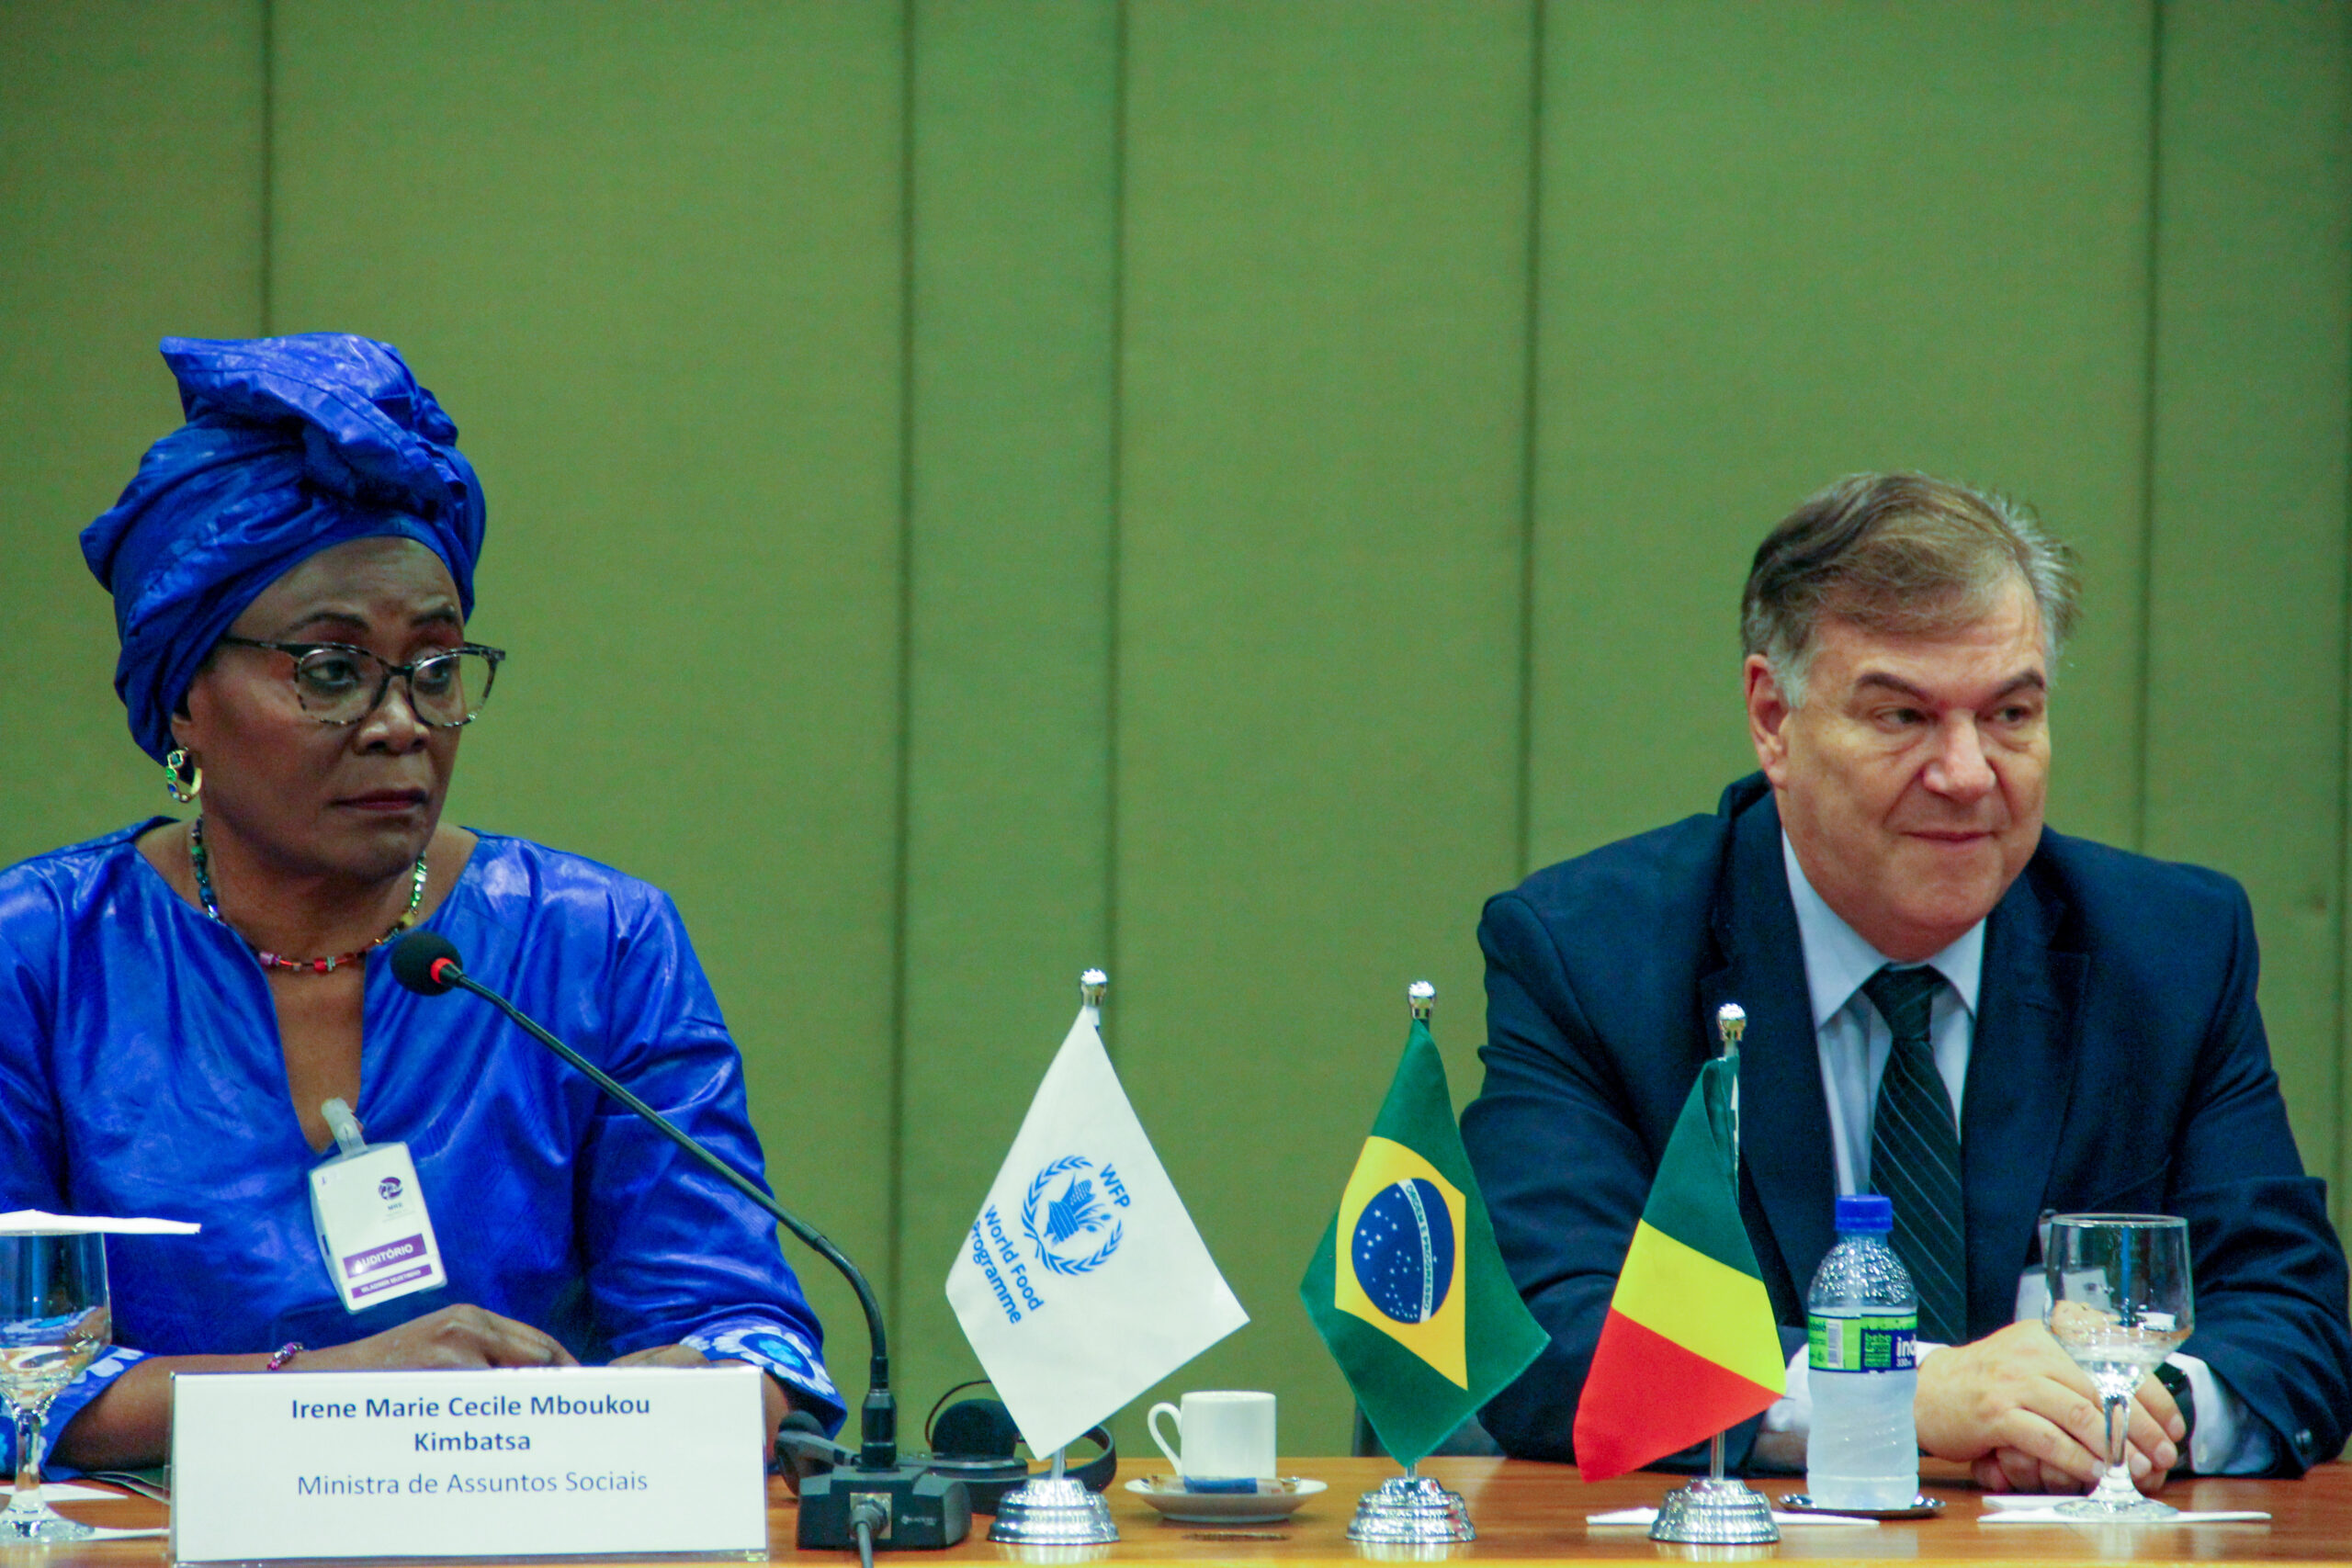 A foto mostra a Ministra de Assuntos Sociais, Irene Marie Cecile Mboukou Kimbtasa, uma mulher negra vestindo uma blusa e um turbante azuis, à esquerda, e o Diretor do Centro de Excelência, Daniel Balaban, um homem branco usando um terno escuro e gravata, à direita.